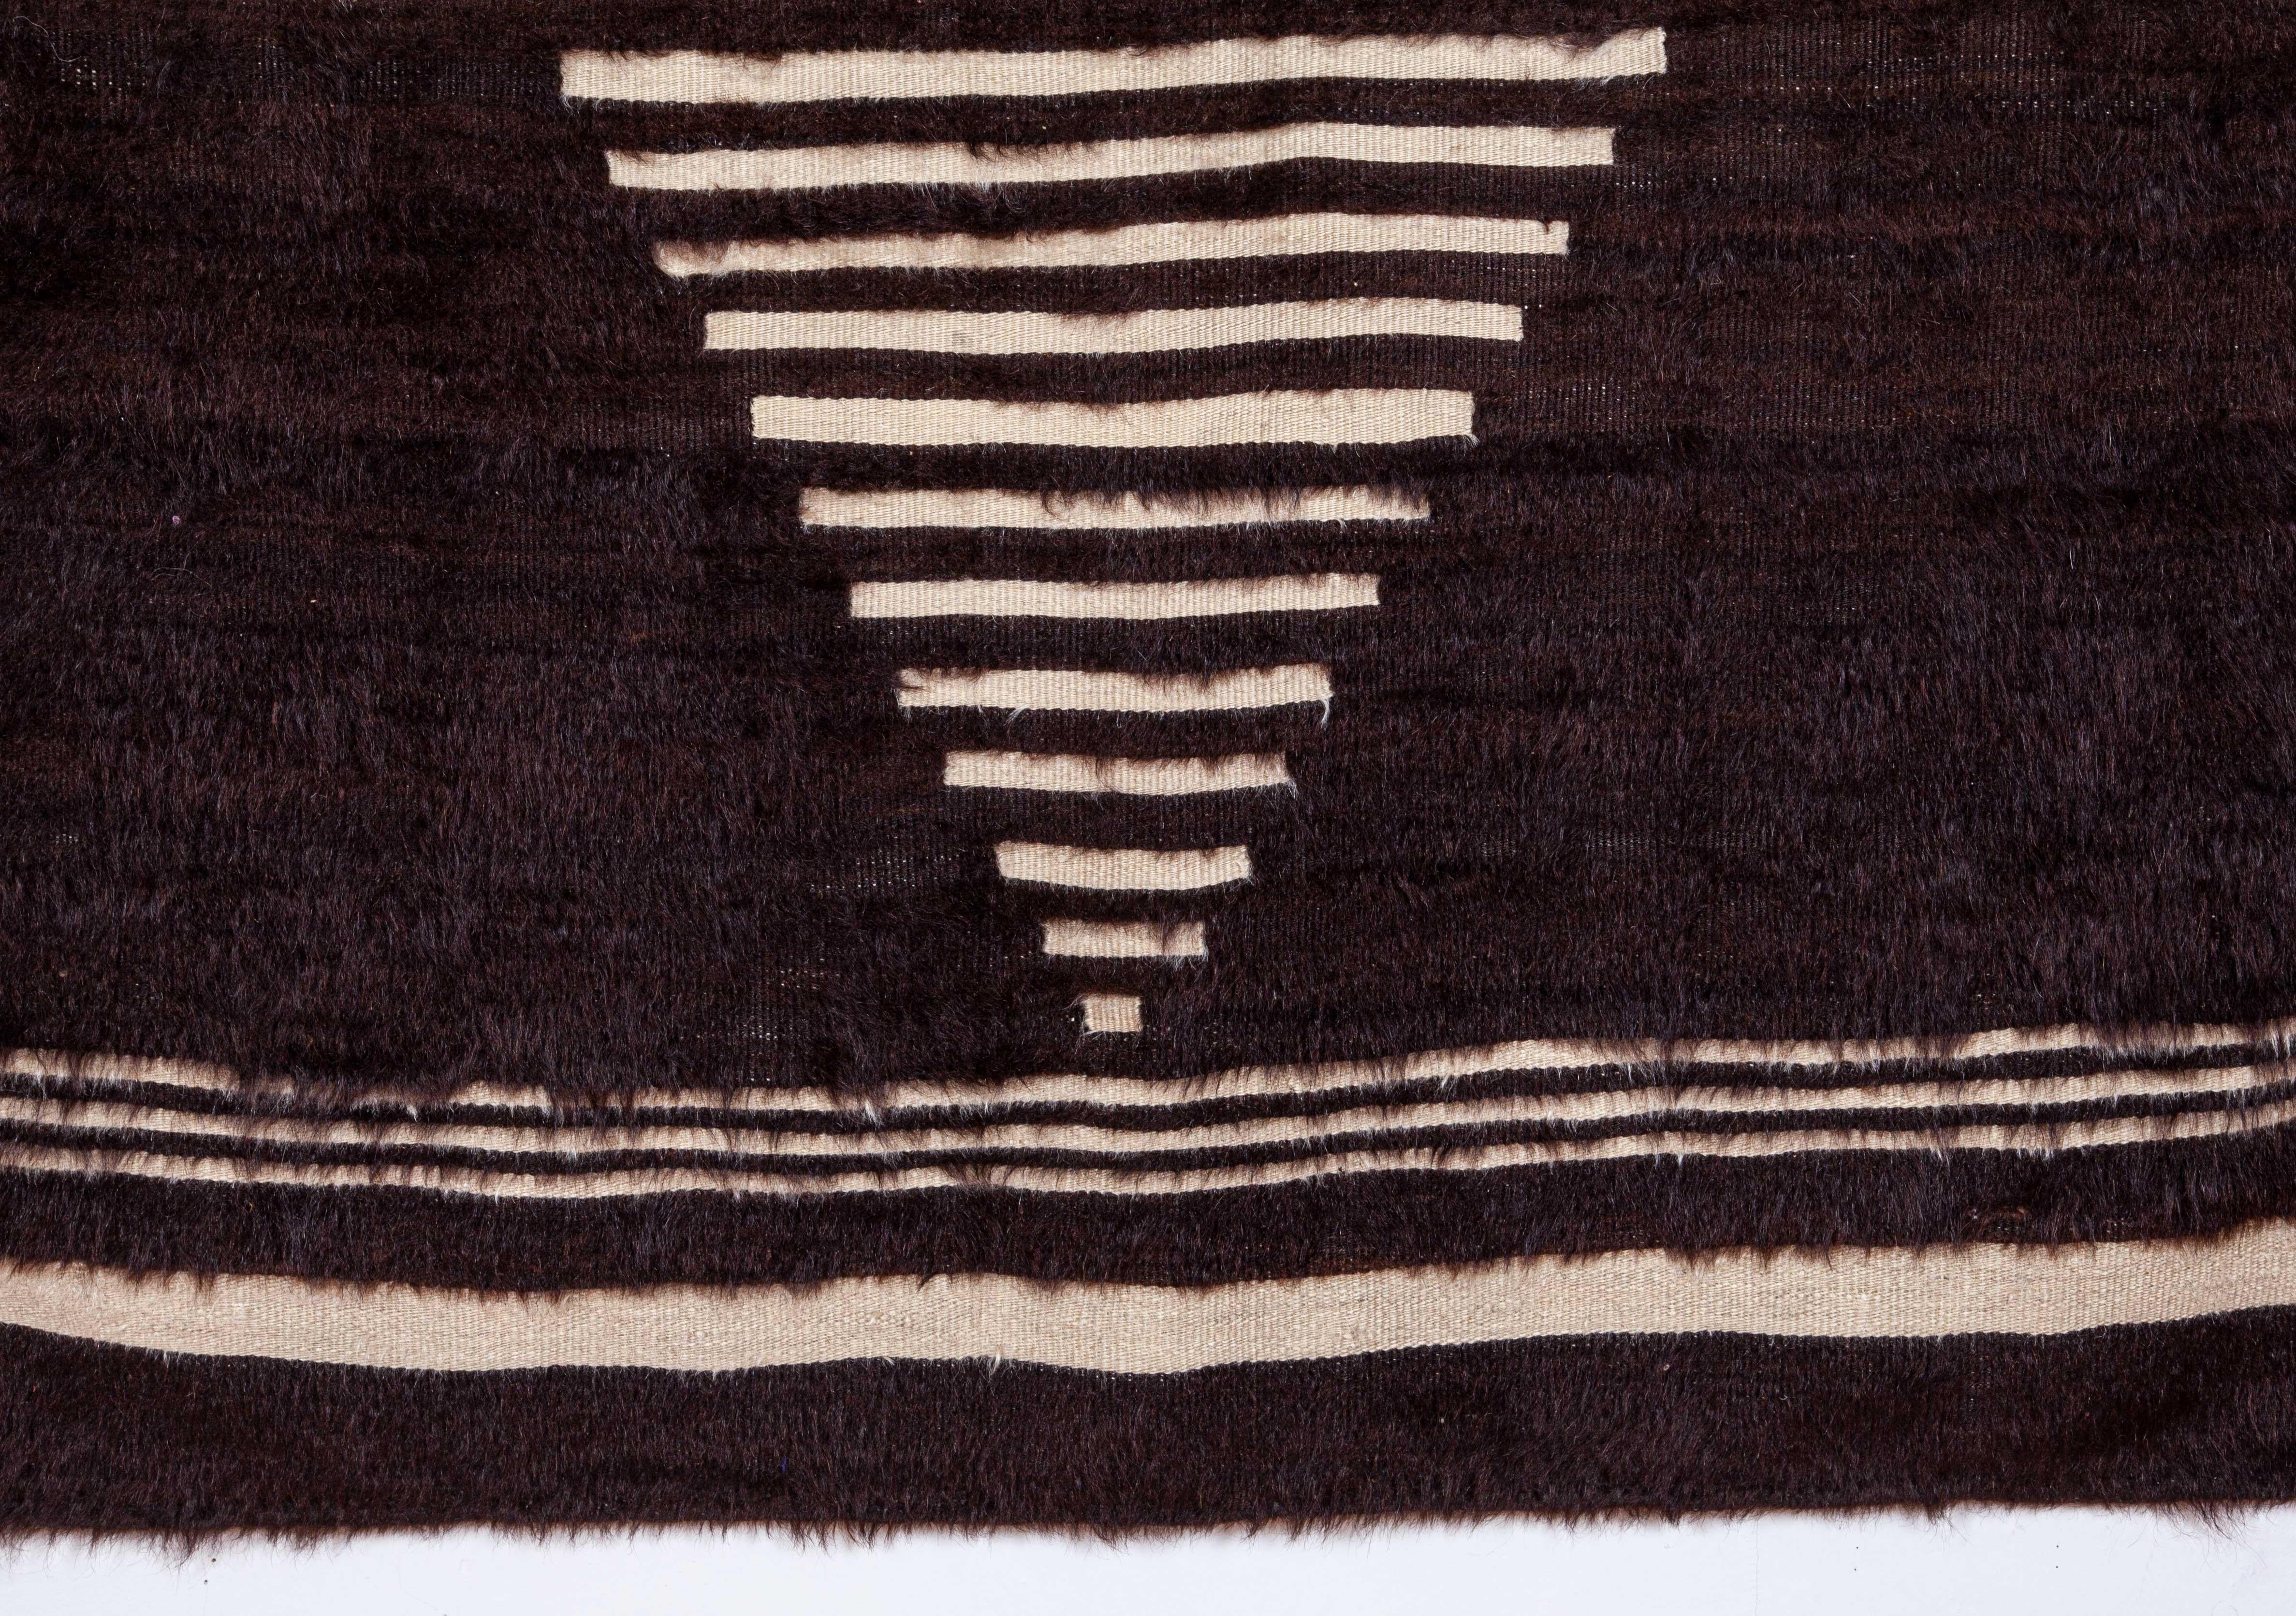 Hand-Woven Angora Blanket from Siirt, Turkey, Mid-20th Century